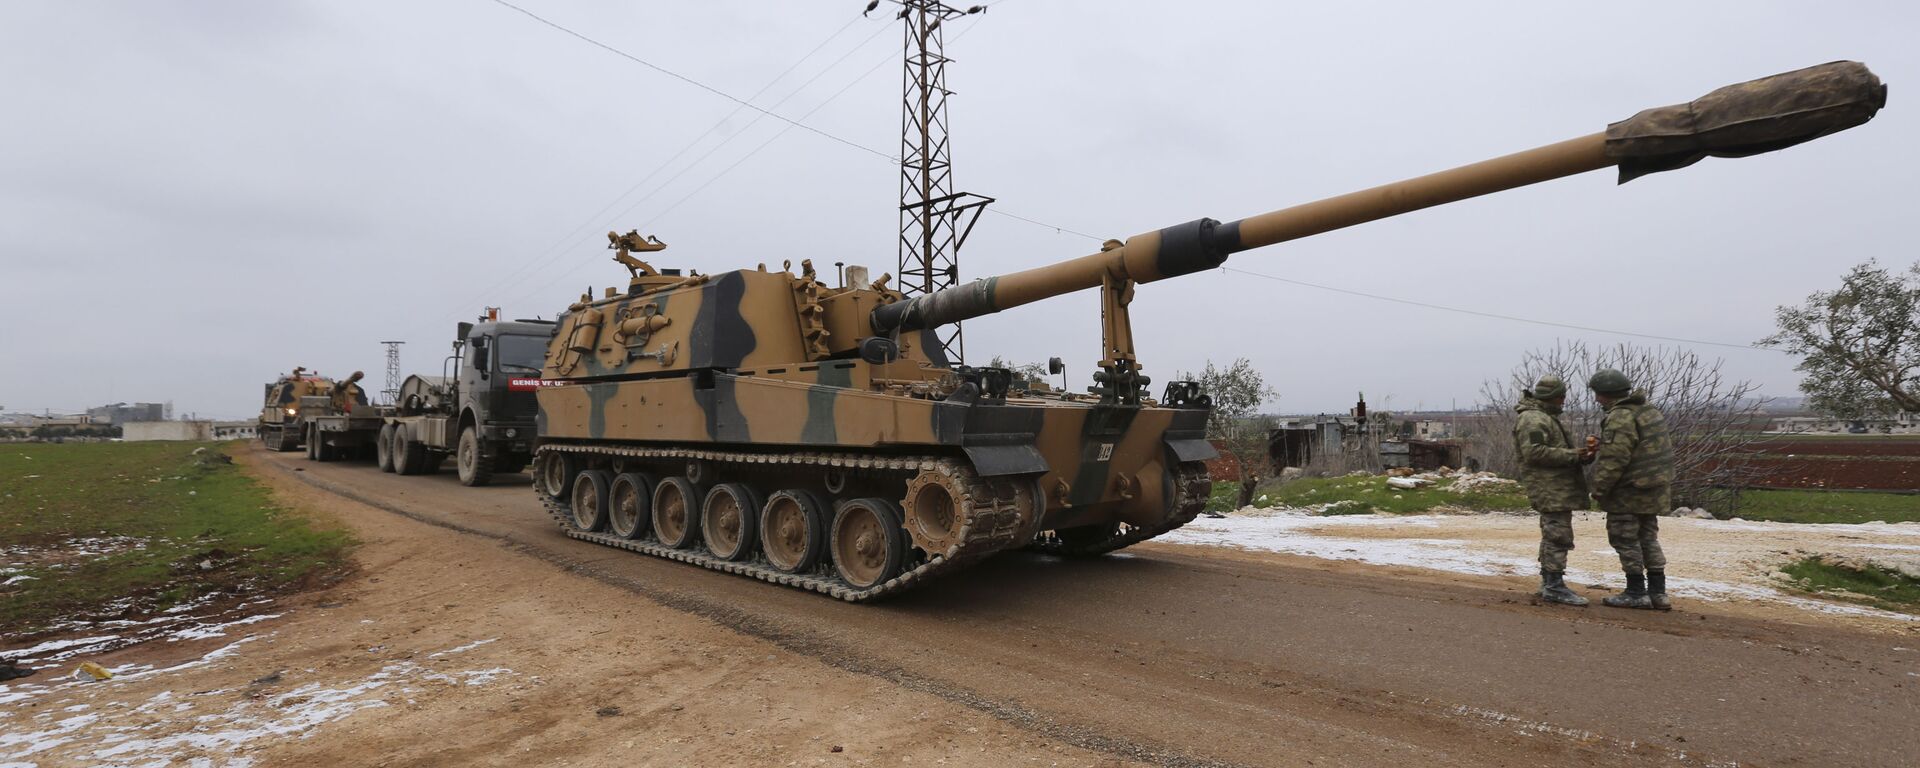 Un convoi militaire turc près de la ville d'Idlib, en Syrie, mercredi 12 février 2020 - Sputnik Afrique, 1920, 13.09.2021